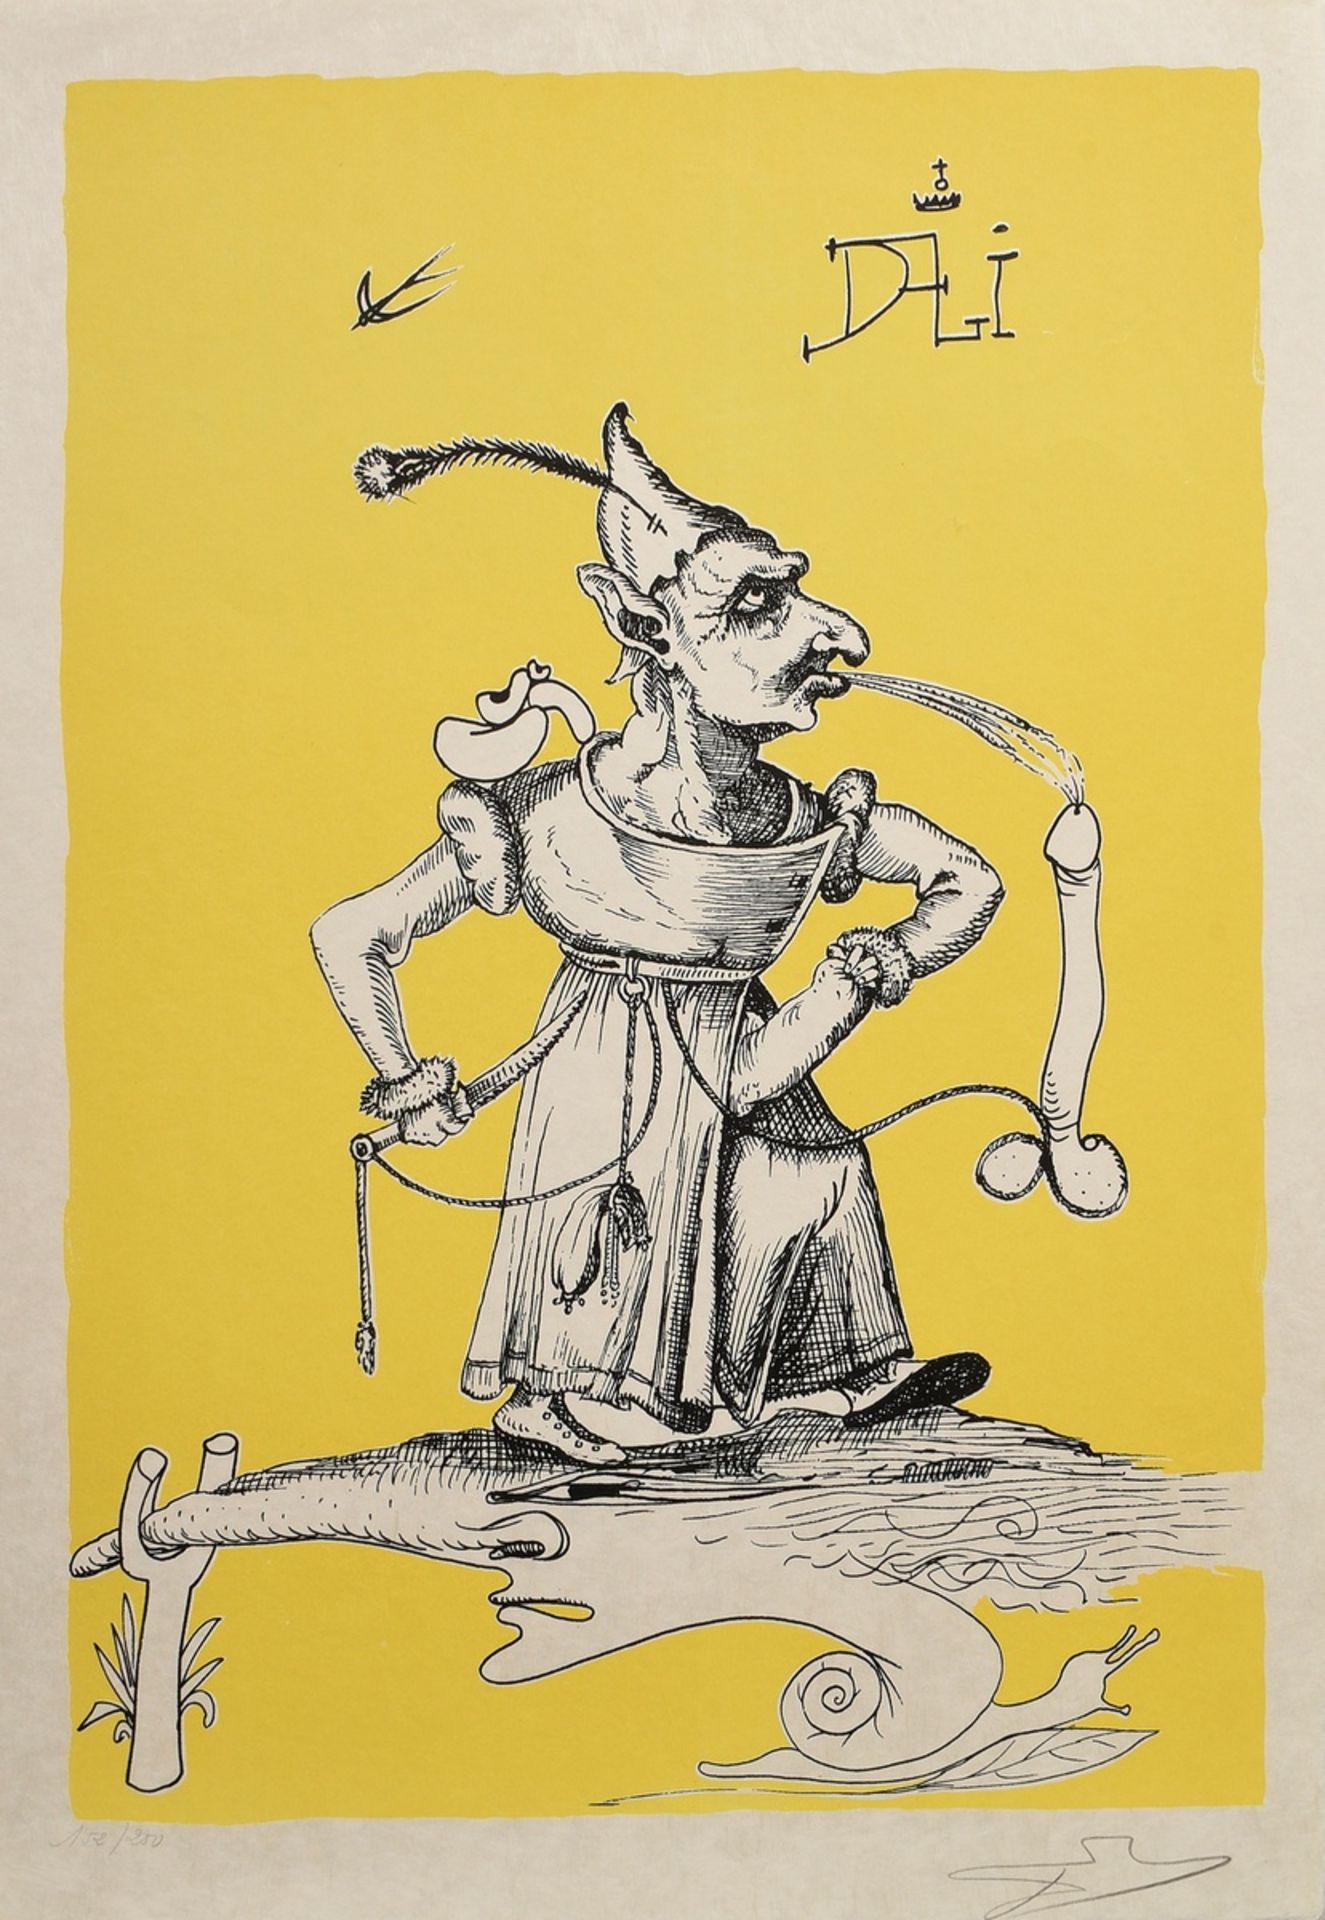 Dalí, Salvador (1904-1989) "Les songes drolatiques de Pantagruel”, 152/250, 25 (Farb-)Lithographien - Bild 6 aus 27